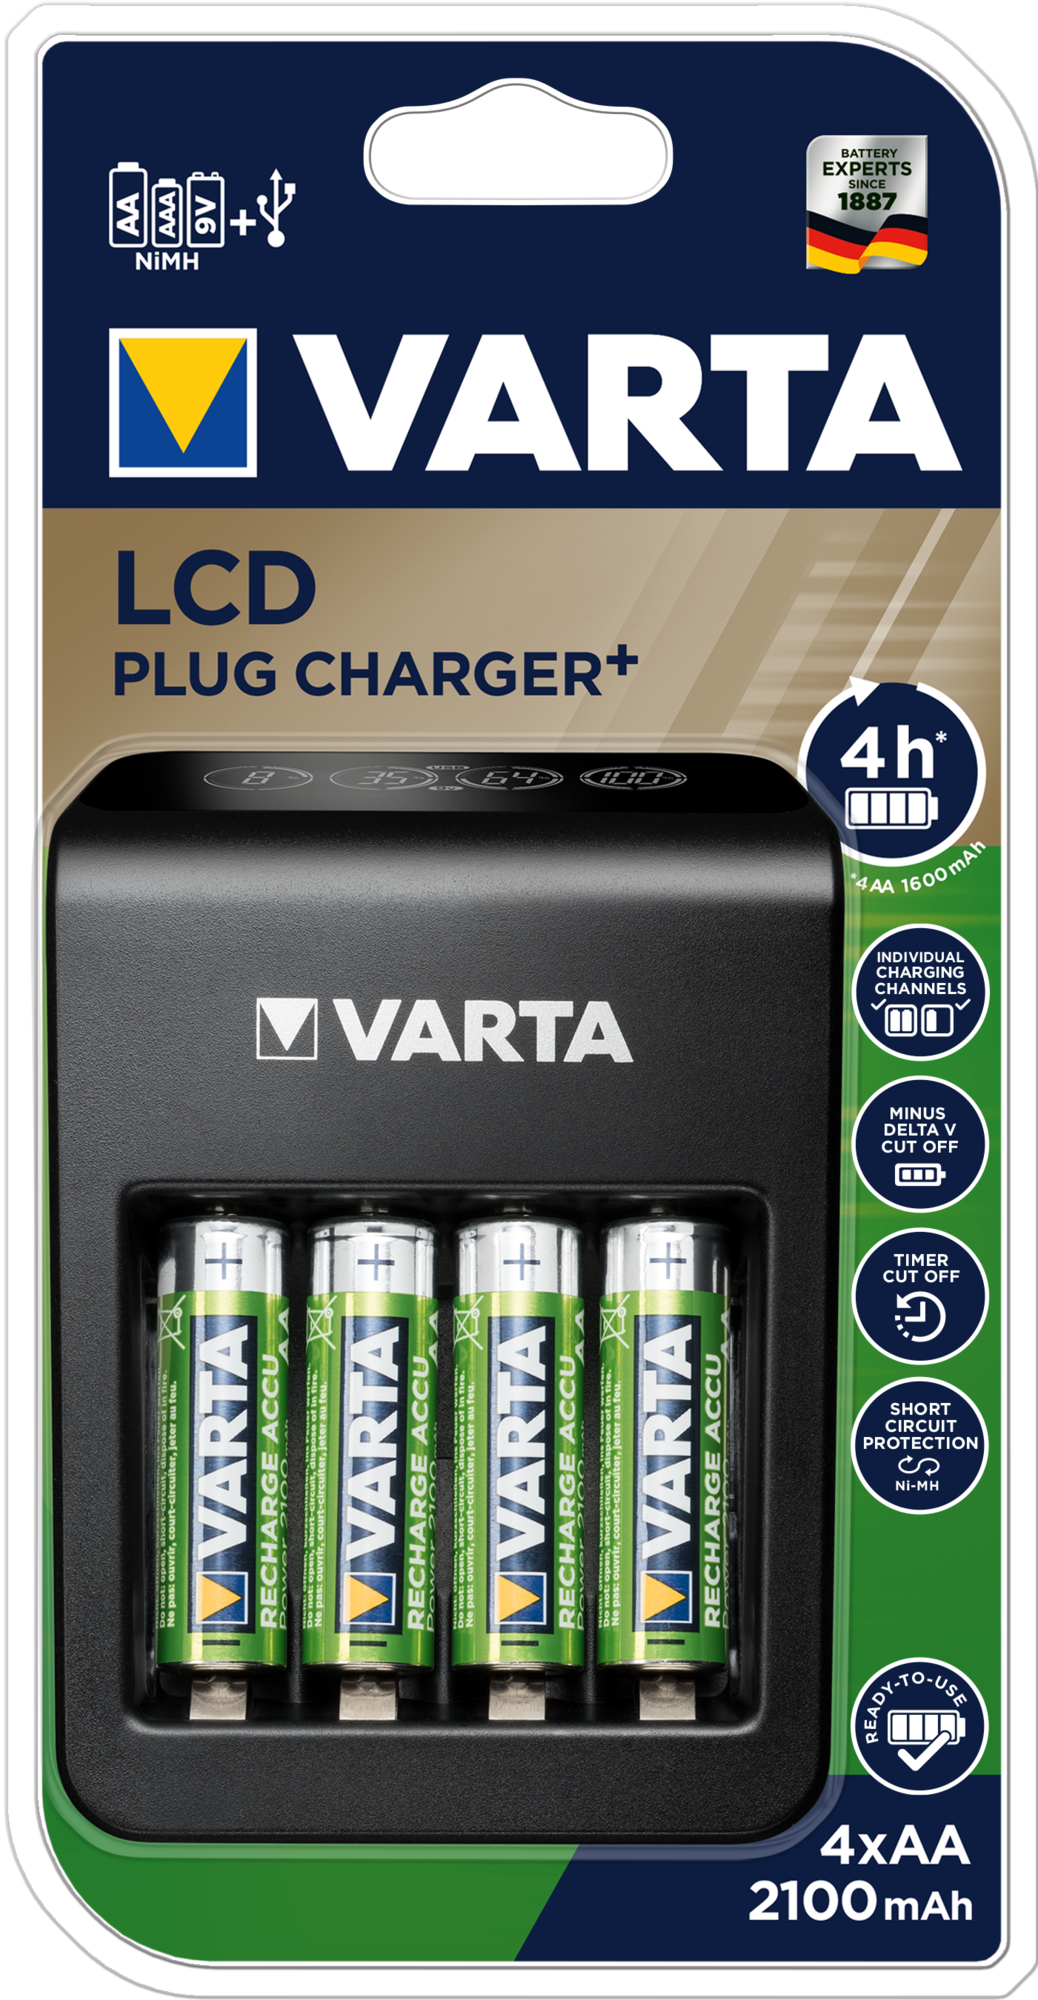 VARTA LCD Plug Charger 56706 57687101441 inkl. avec 4x AA, 2100mAh inkl. avec 4x AA, 2100mAh